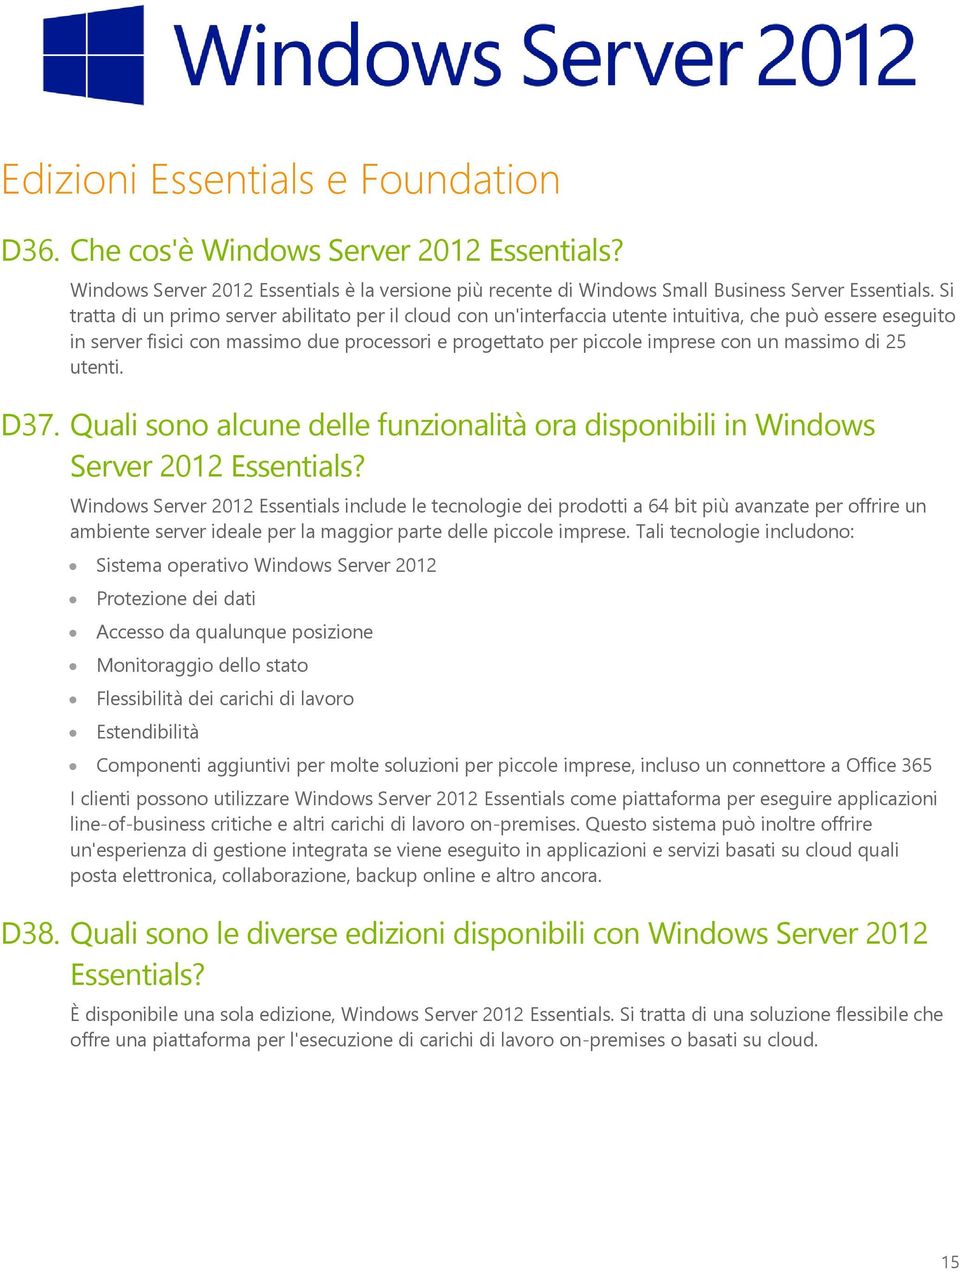 massimo di 25 utenti. D37. Quali sono alcune delle funzionalità ora disponibili in Windows Server 2012 Essentials?